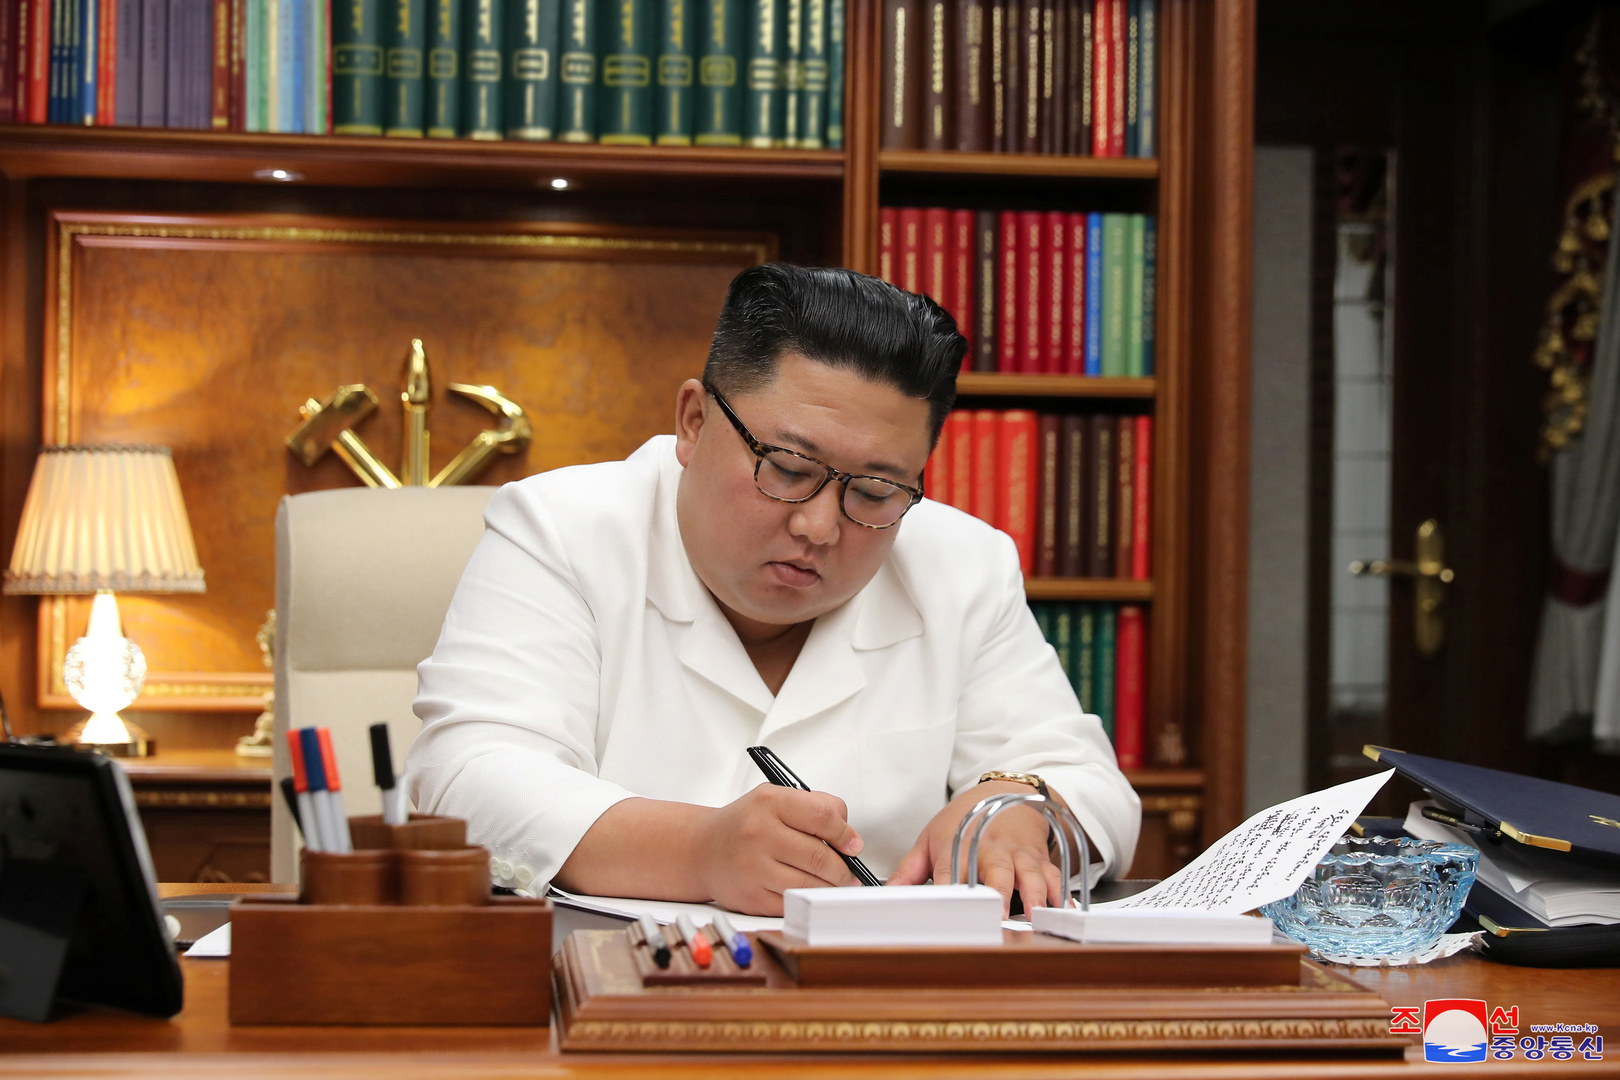 باحث في معهد استراتيجية الأمن القومي الكوري يفسر معنى ازدياد نشاطات الزعيم كيم